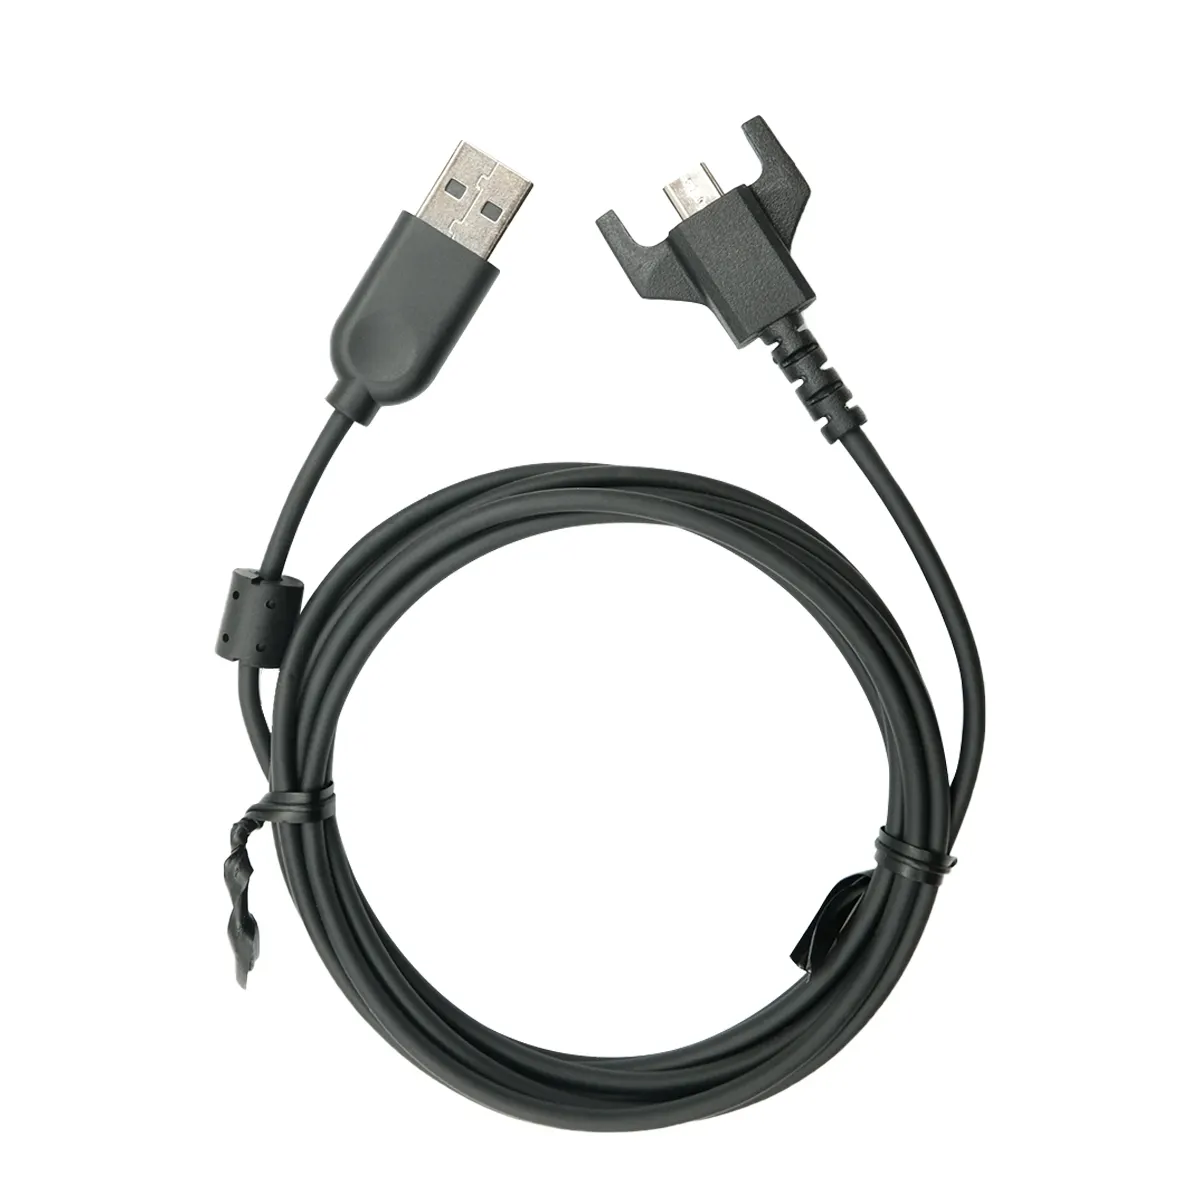 Logitech Cáp sạc USB chính hãng cho Chuột chơi game G703 G900 G903 G Pro không dây G Pro X Superlight, USB sang Micro USB (Màu Đen)